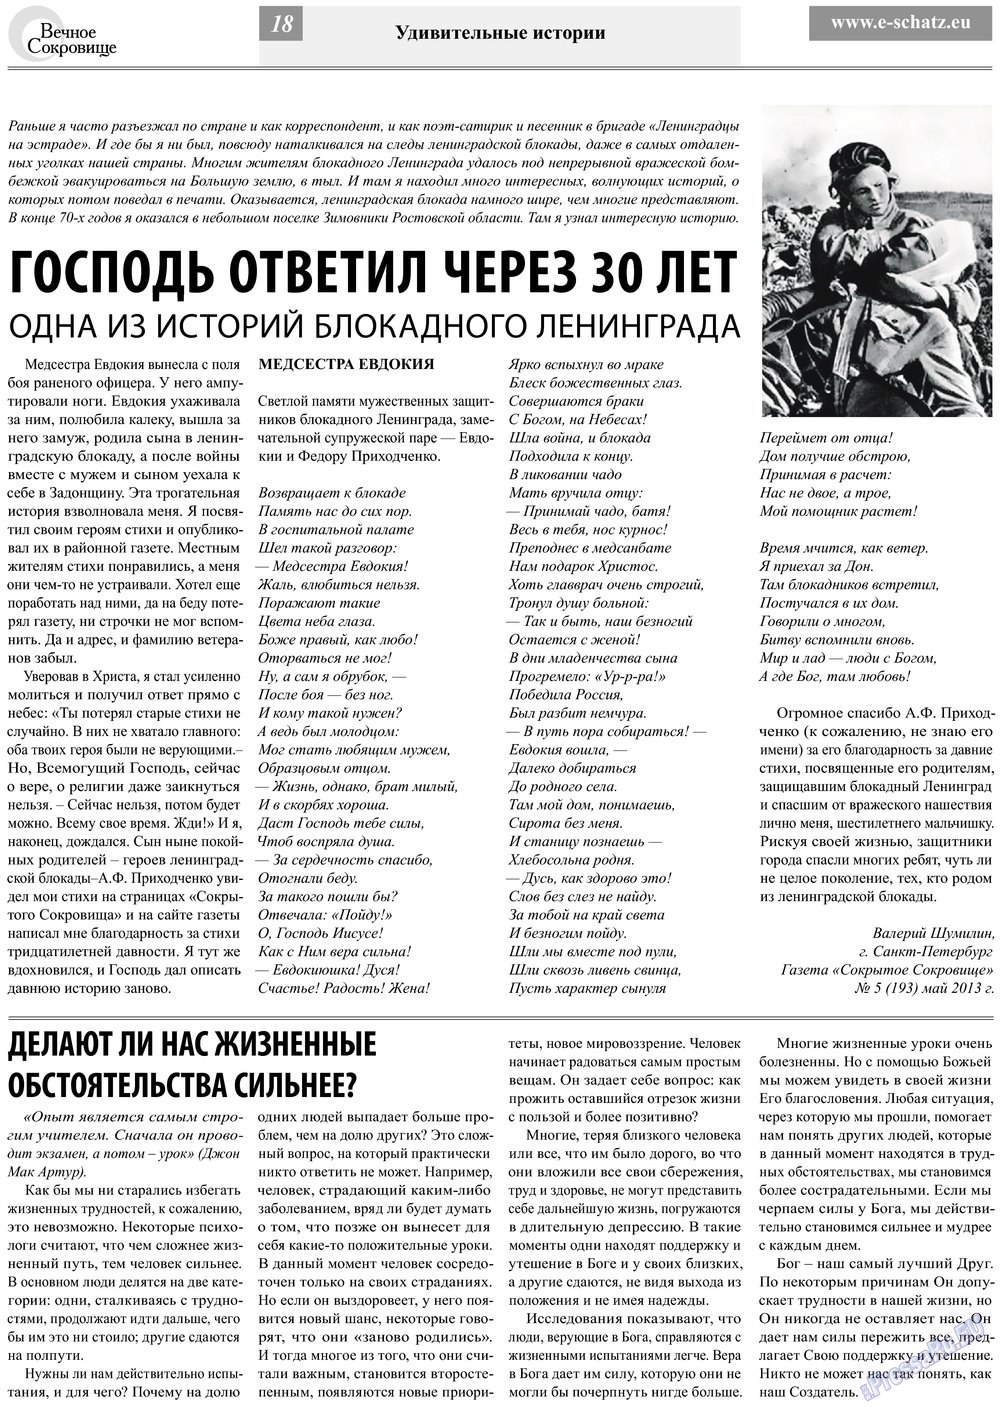 Вечное сокровище, газета. 2013 №3 стр.18